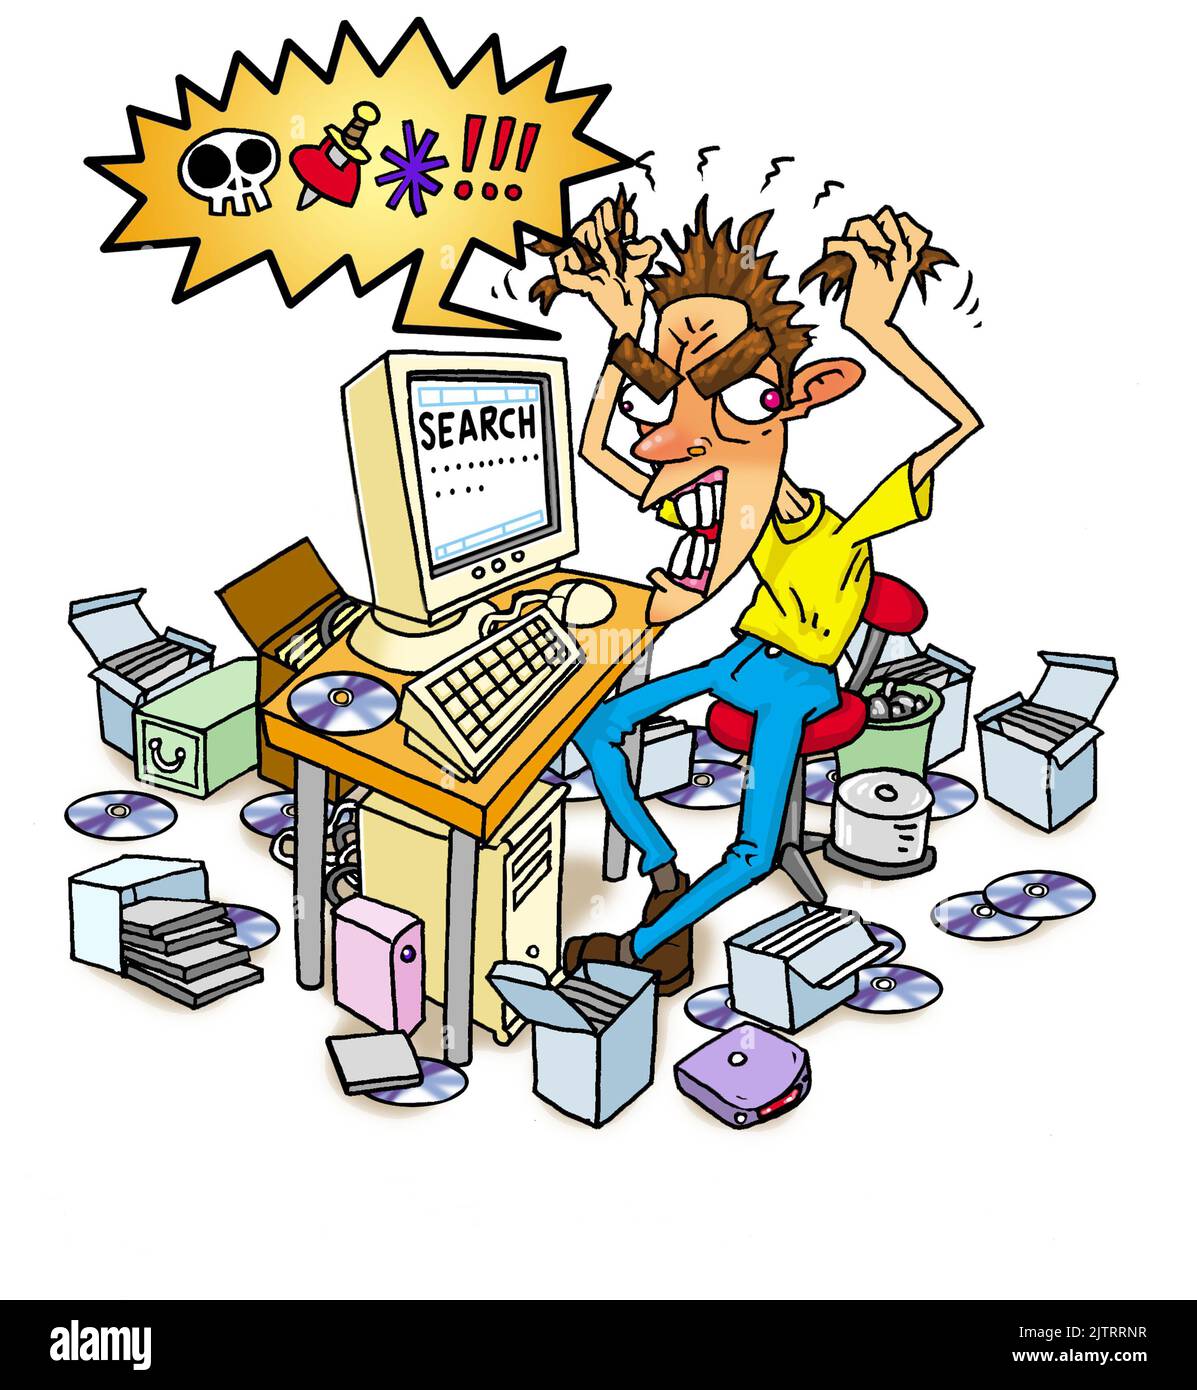 Konzeptkunst eines wütenden Mannes, umgeben von PC-Hardware, der Online-Speicher, Computerfestplatten und CD-ROMs nach fehlenden/verlorenen Datendateien durchsucht. Stockfoto